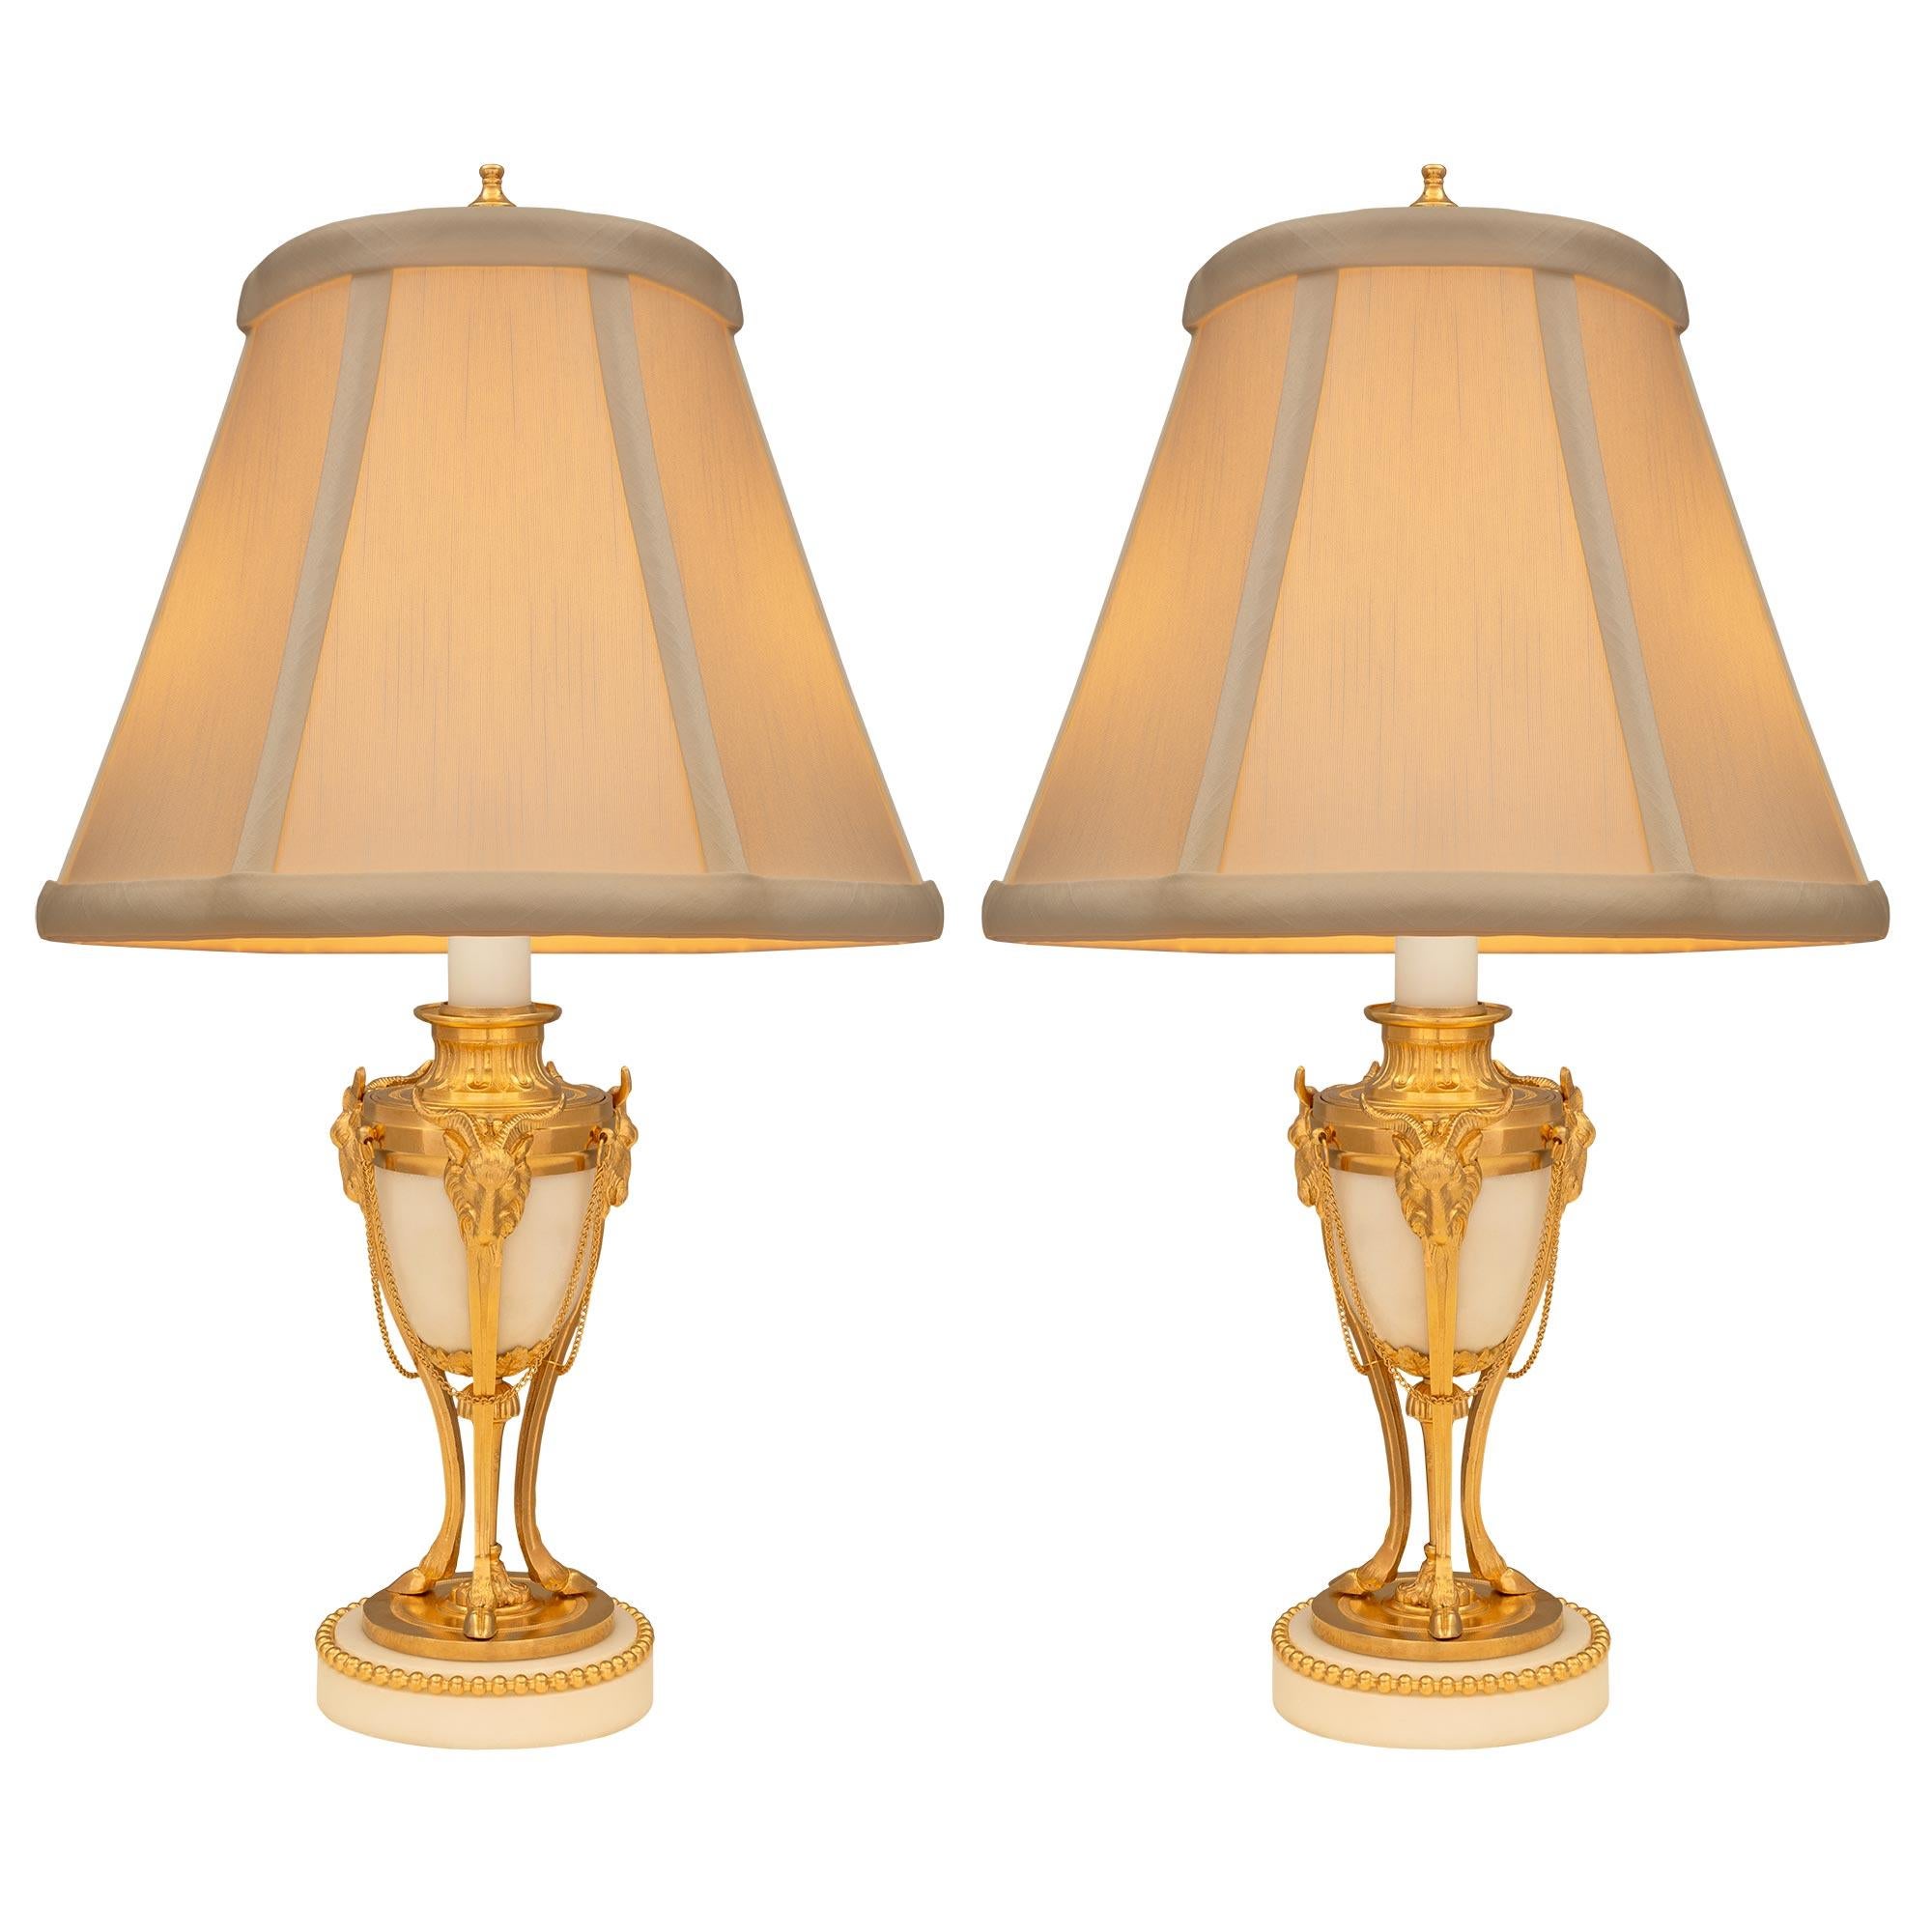 Une élégante paire de lampes françaises du XIXe siècle, de style Louis XVI, en marbre blanc de Carrare et bronze doré. Chaque lampe est surélevée par une base circulaire en marbre blanc de Carrare avec une fine bande perlée en bronze doré. Trois